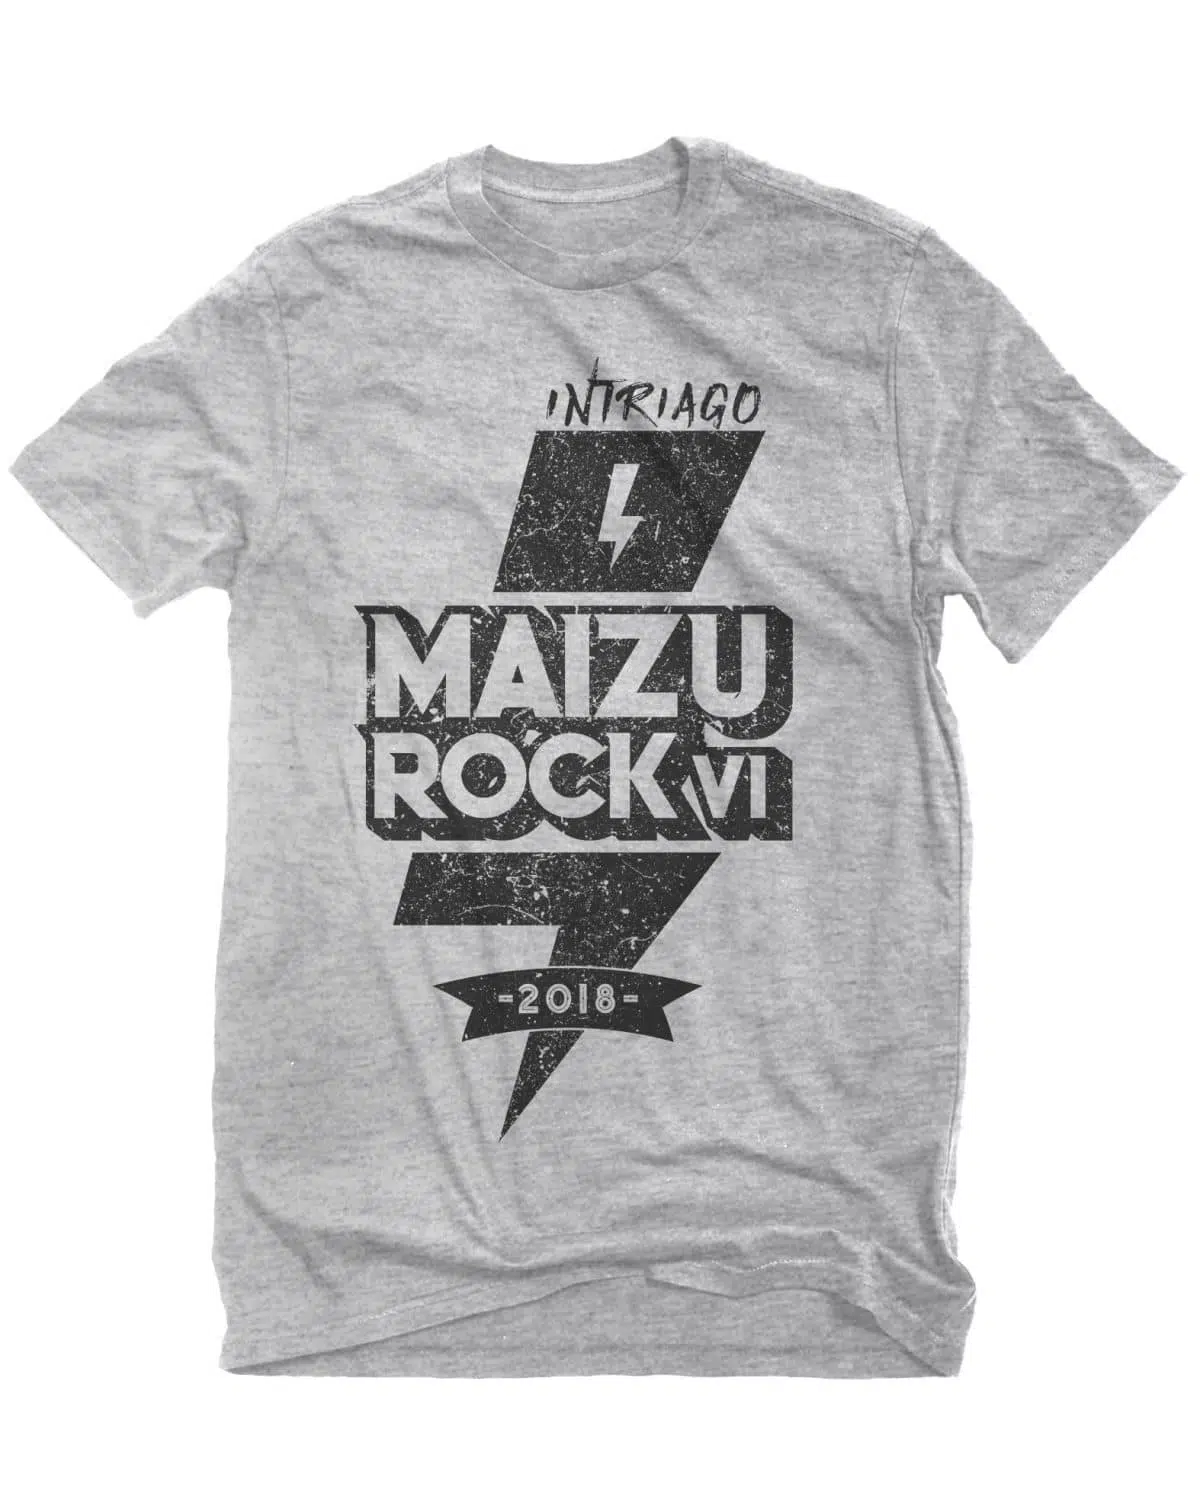 Camiseta Maizu2018 2 e1582024481323